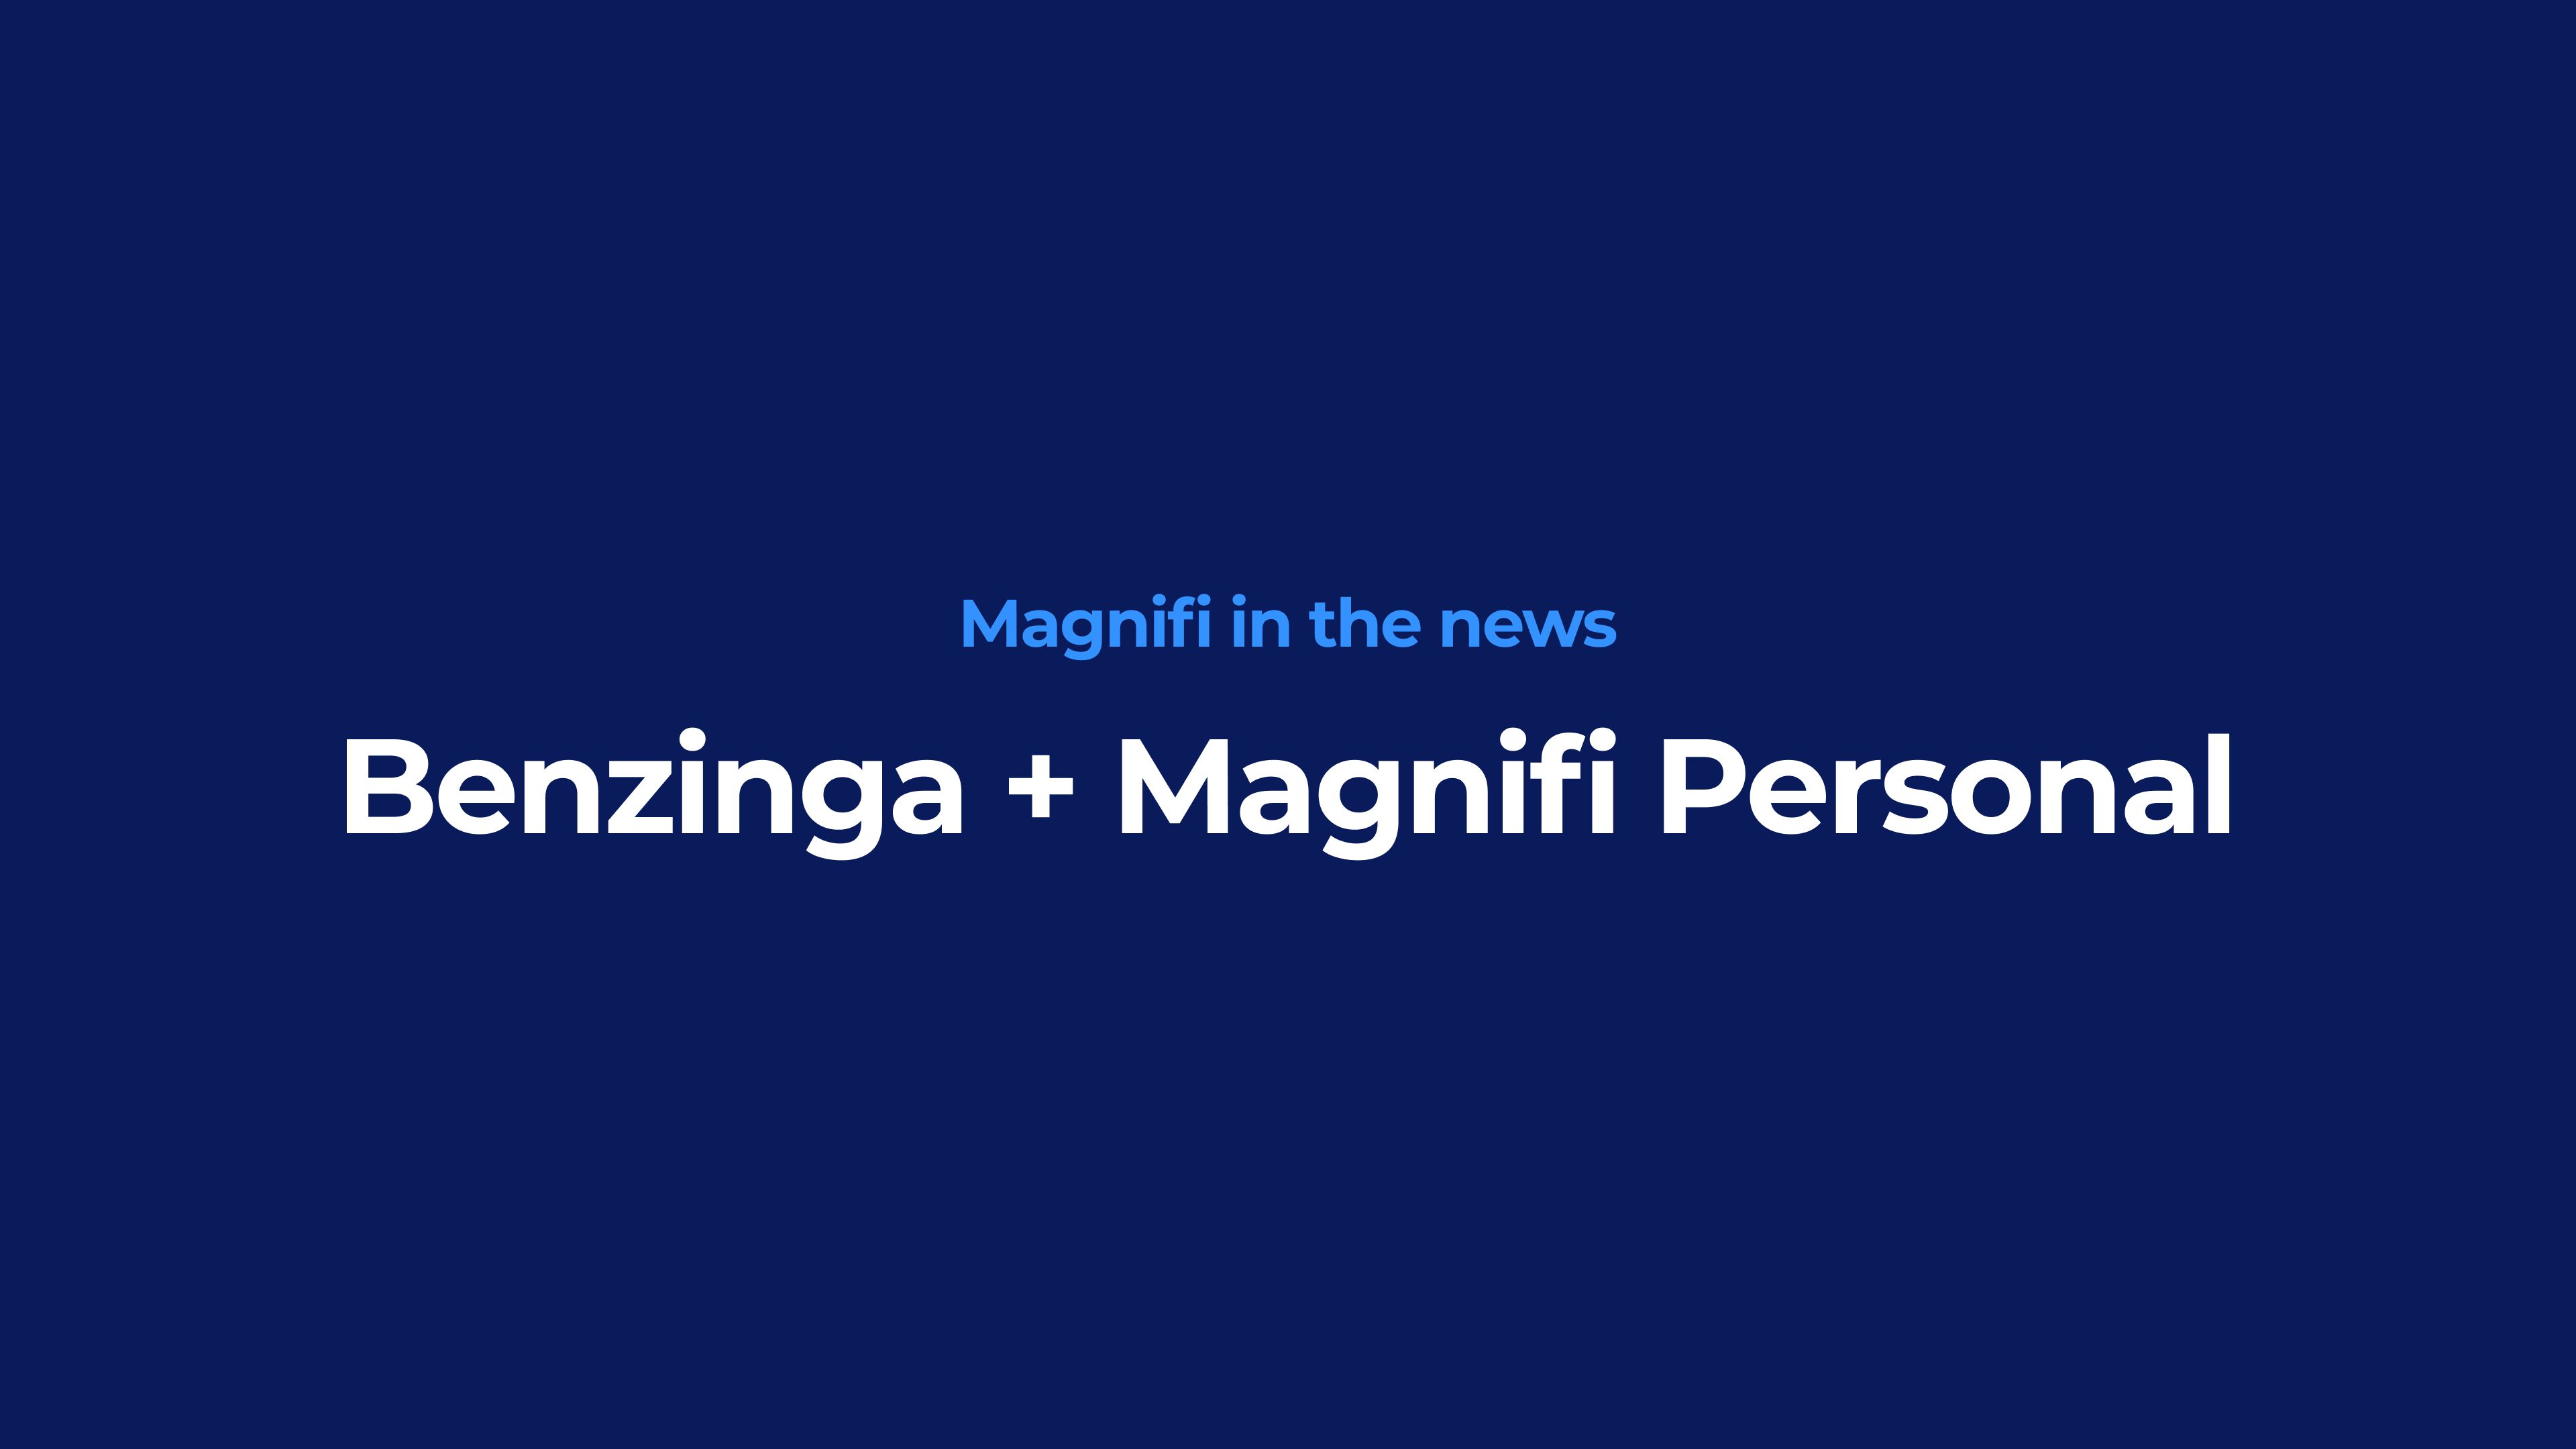 Magnifi in the news
Benzinga + Magnifi Personal